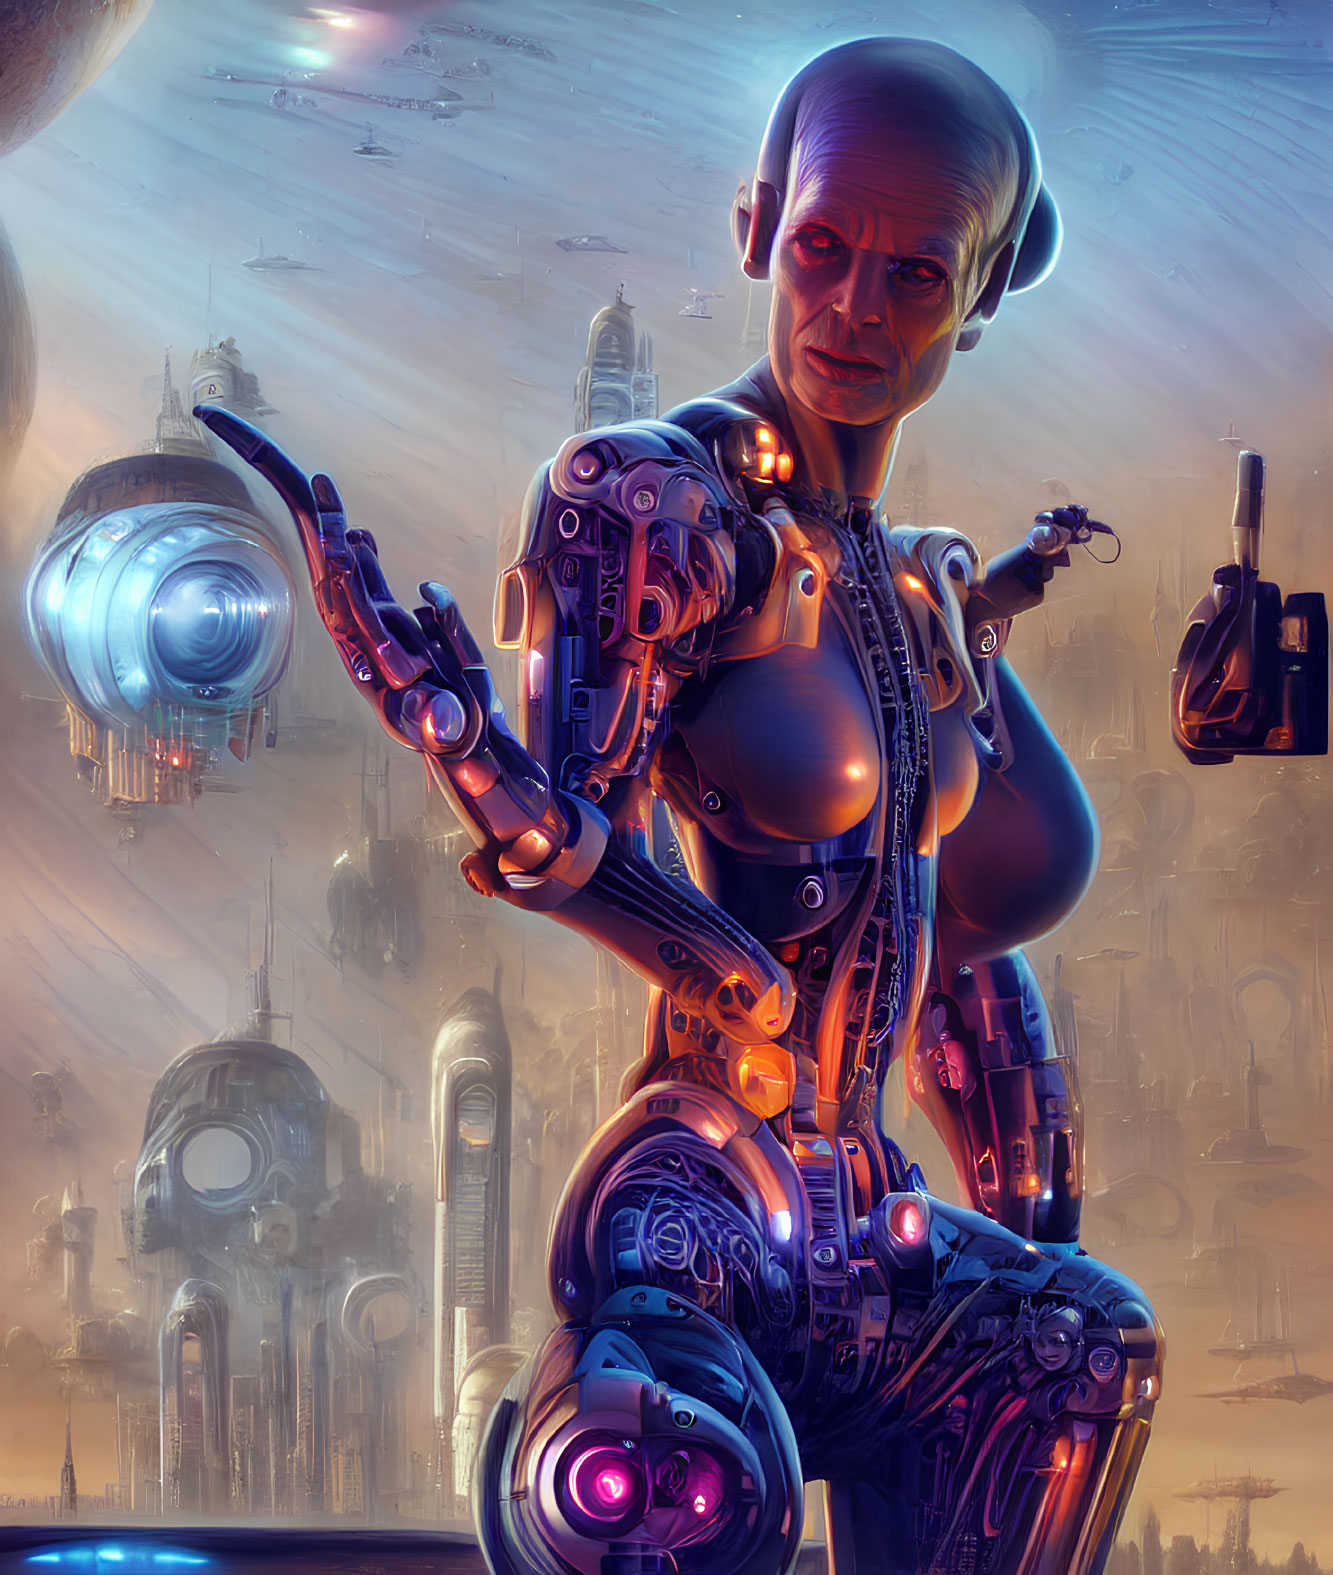 Futuristic cyborg with robotic hand in advanced cityscape